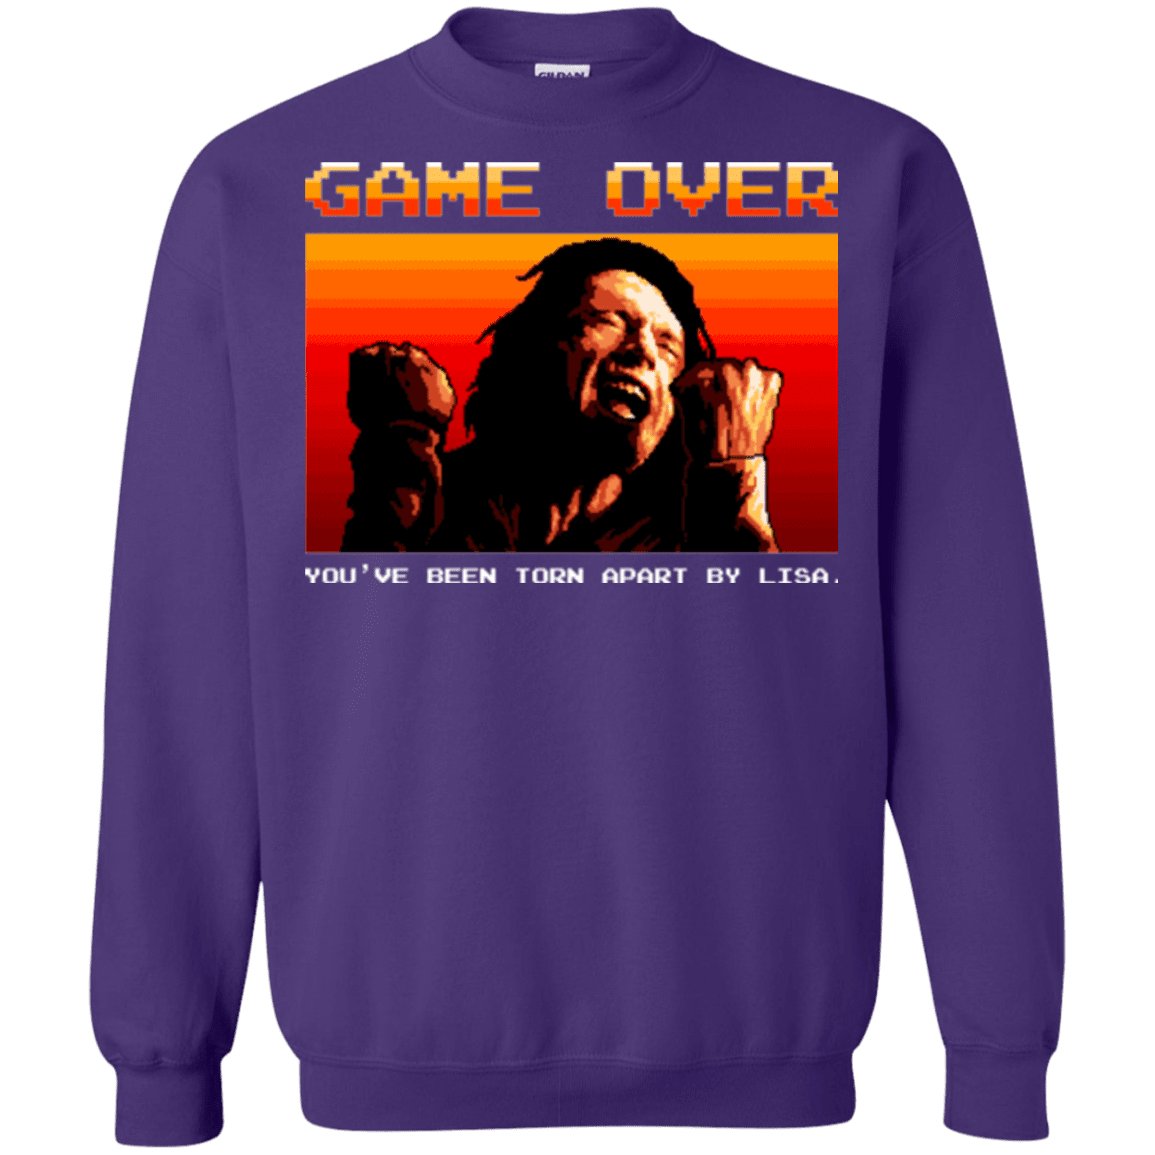 Sweatshirts Purple / Small Game Over Crewneck Sweatshirt